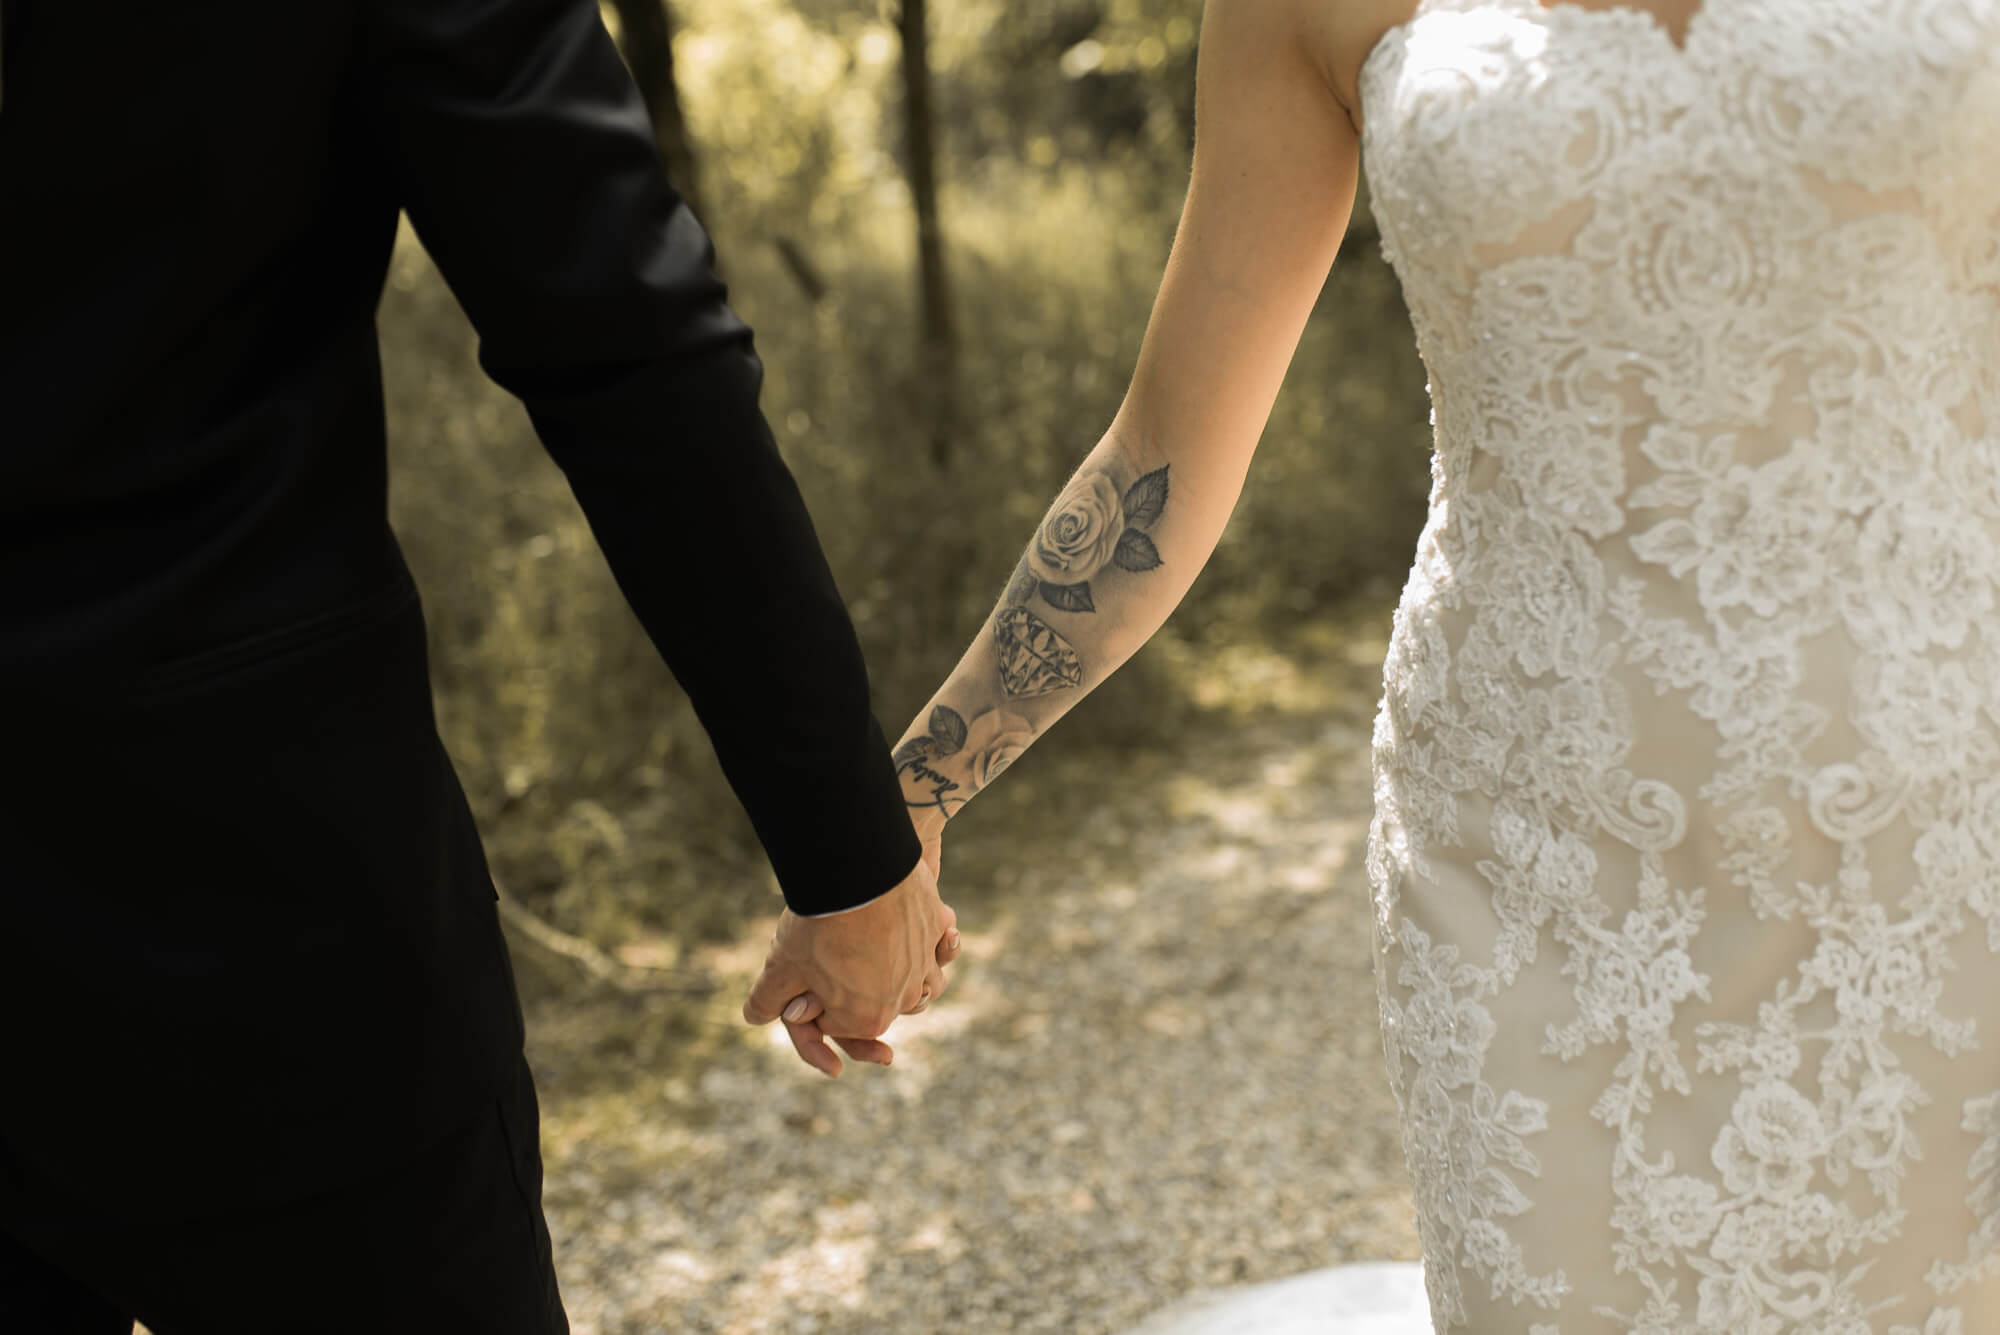 Nahaufnahme von Brautpaar die Hand in Hand durch Park laufen dabei ist ein Tattoo am Unterarm der Braut zu sehen